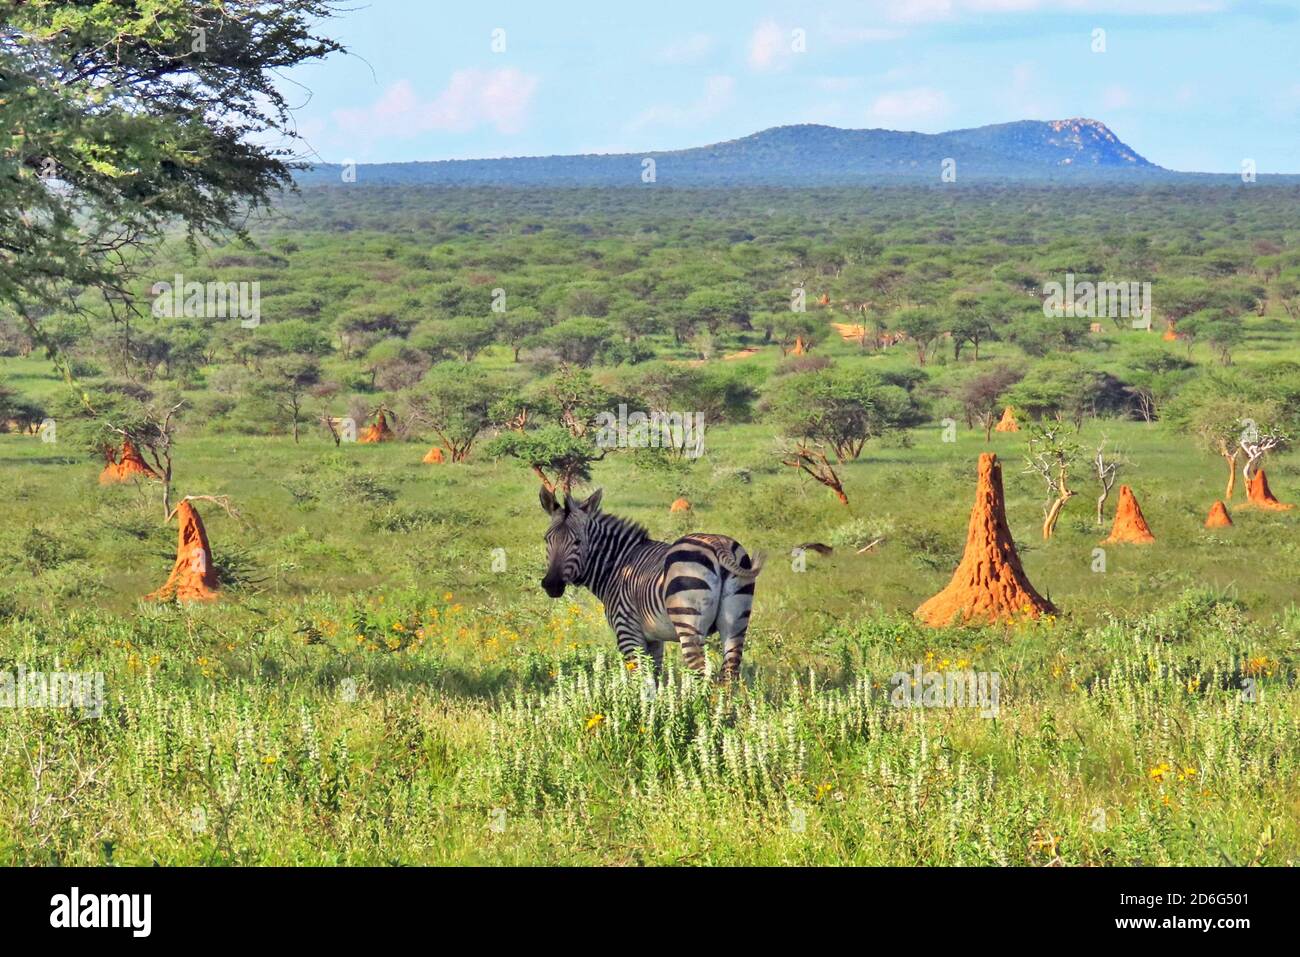 Un zèbre de montagne de Hartmann (Equus zébra) se tenant parmi les monticules de termites de la réserve d'Okonjima, région d'Otjozondjupa, Namibie. Banque D'Images